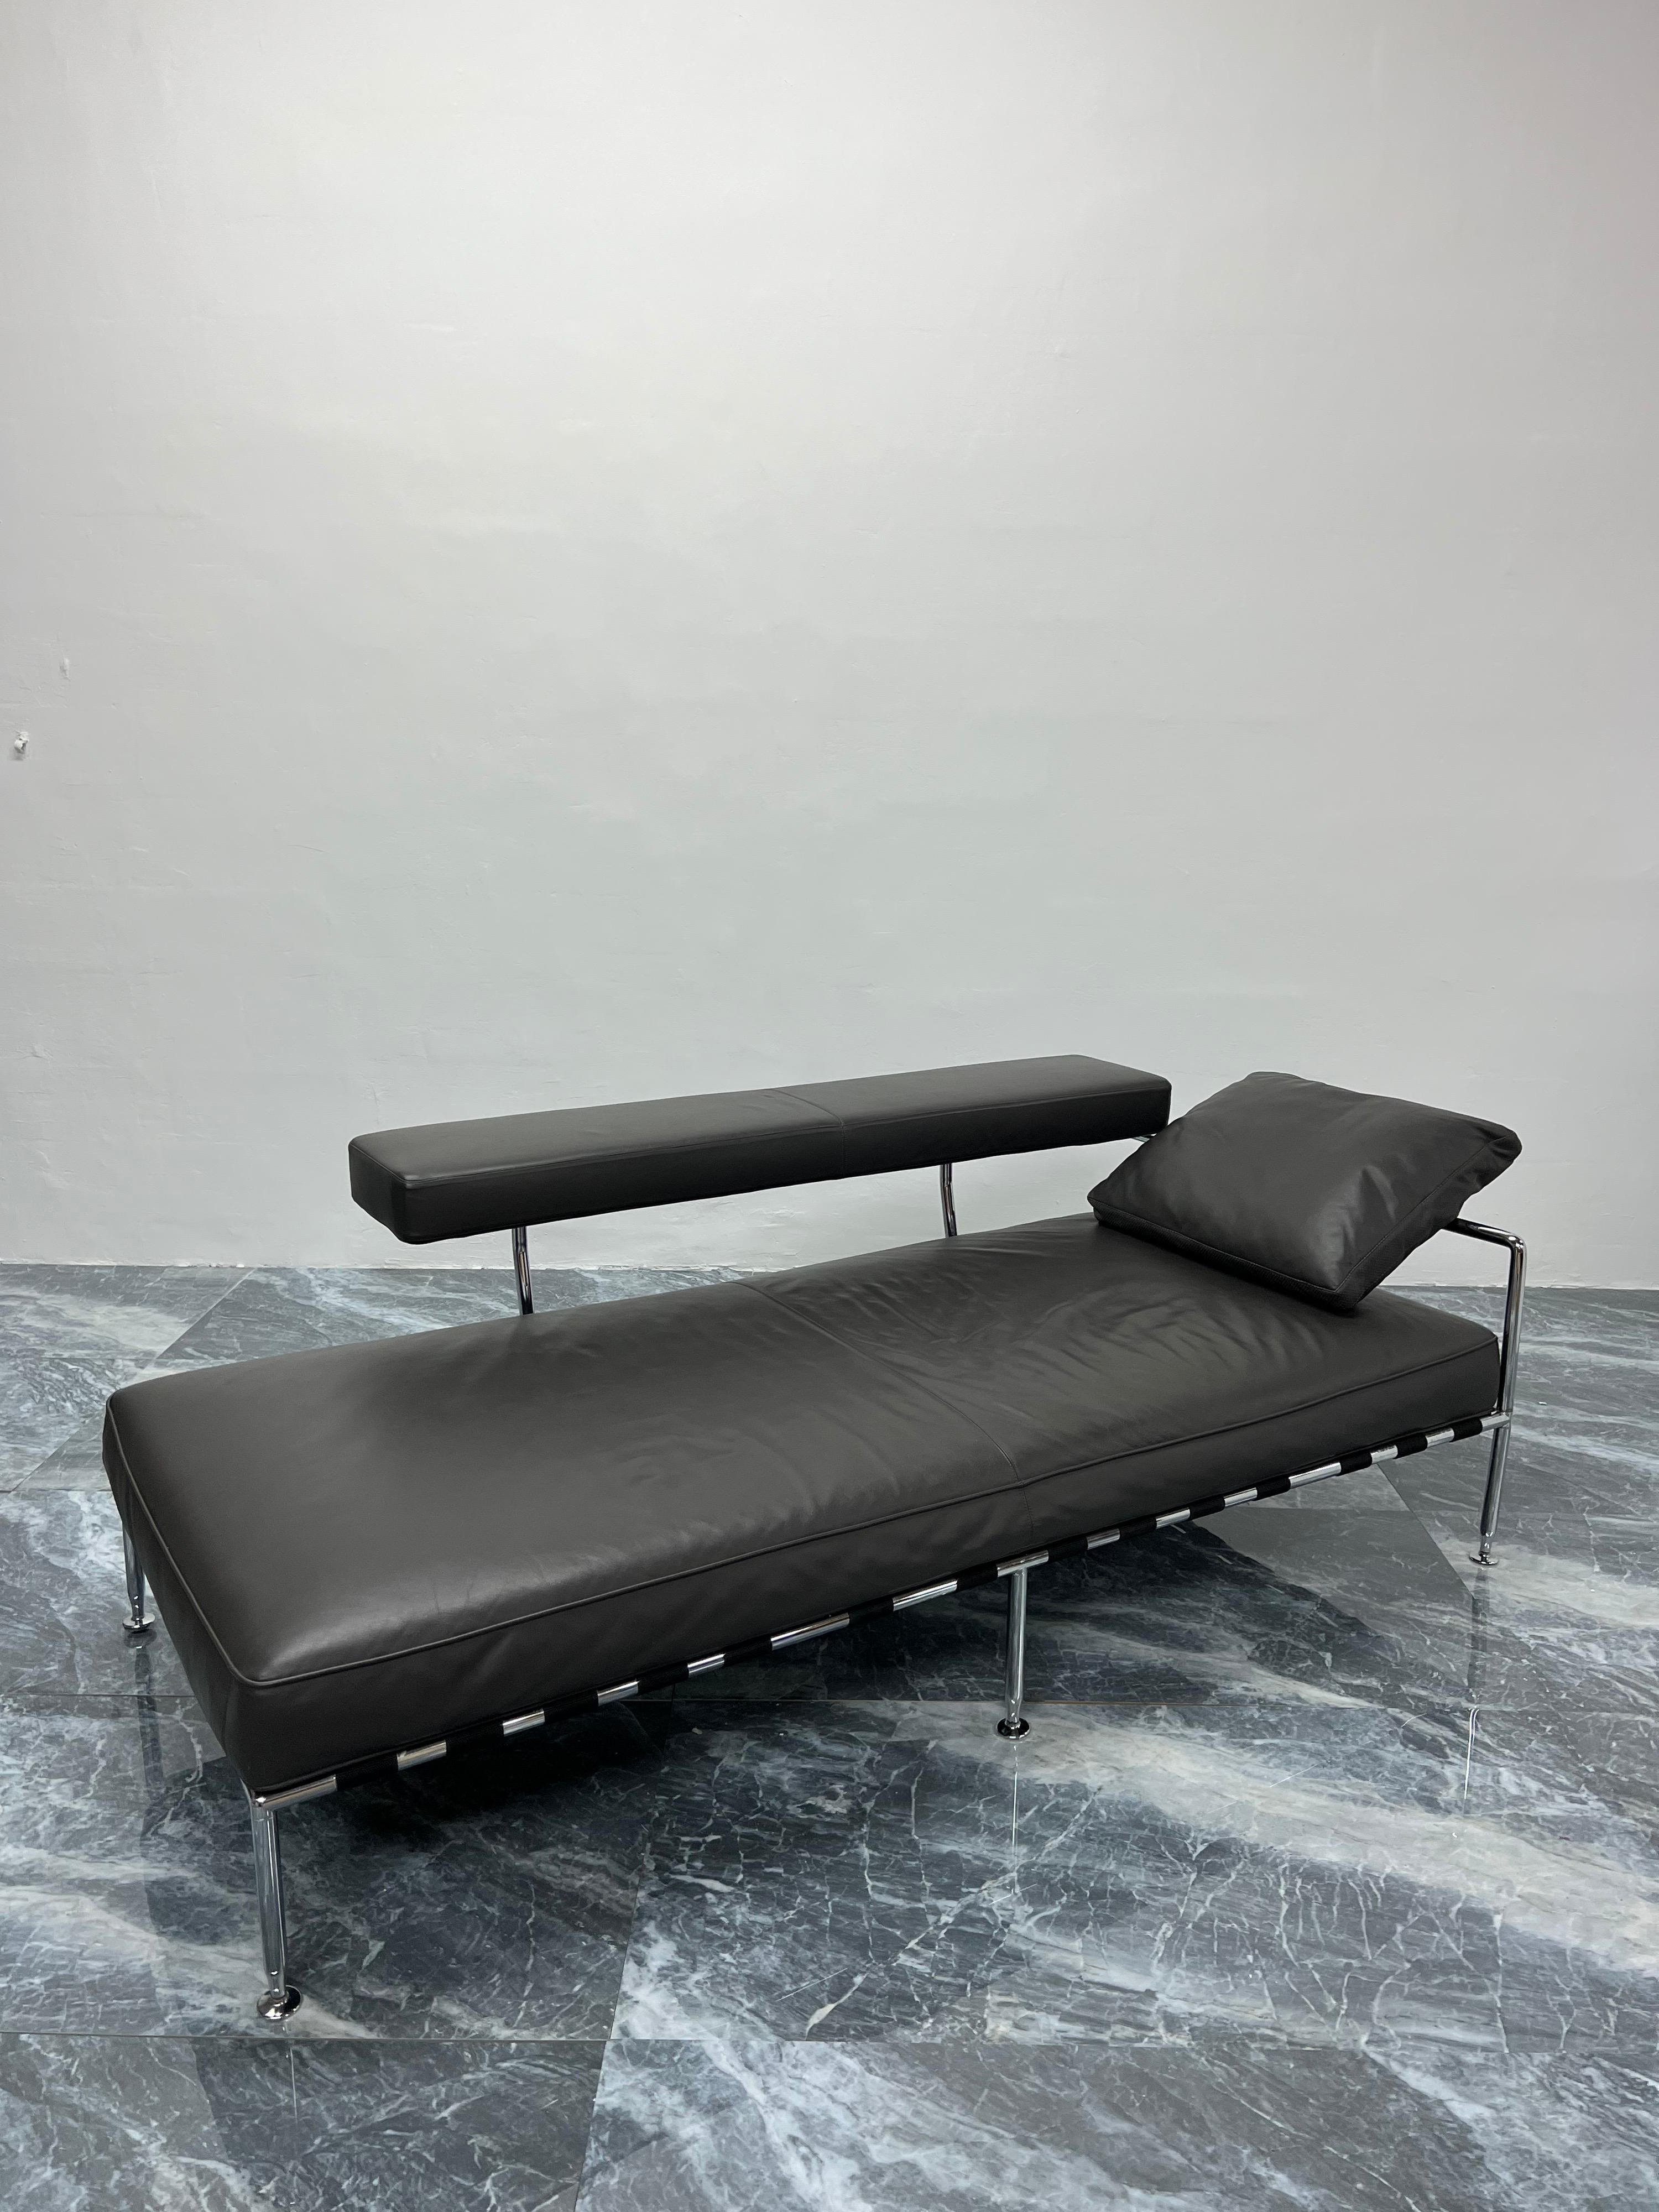 Lit de jour ou chaise longue en cuir gris anthracite et chrome tubulaire conçu par Antonio Citterio et produit par B&B Italia. Le bras en cuir pivote vers l'extérieur pour faire plus de place sur le lit.